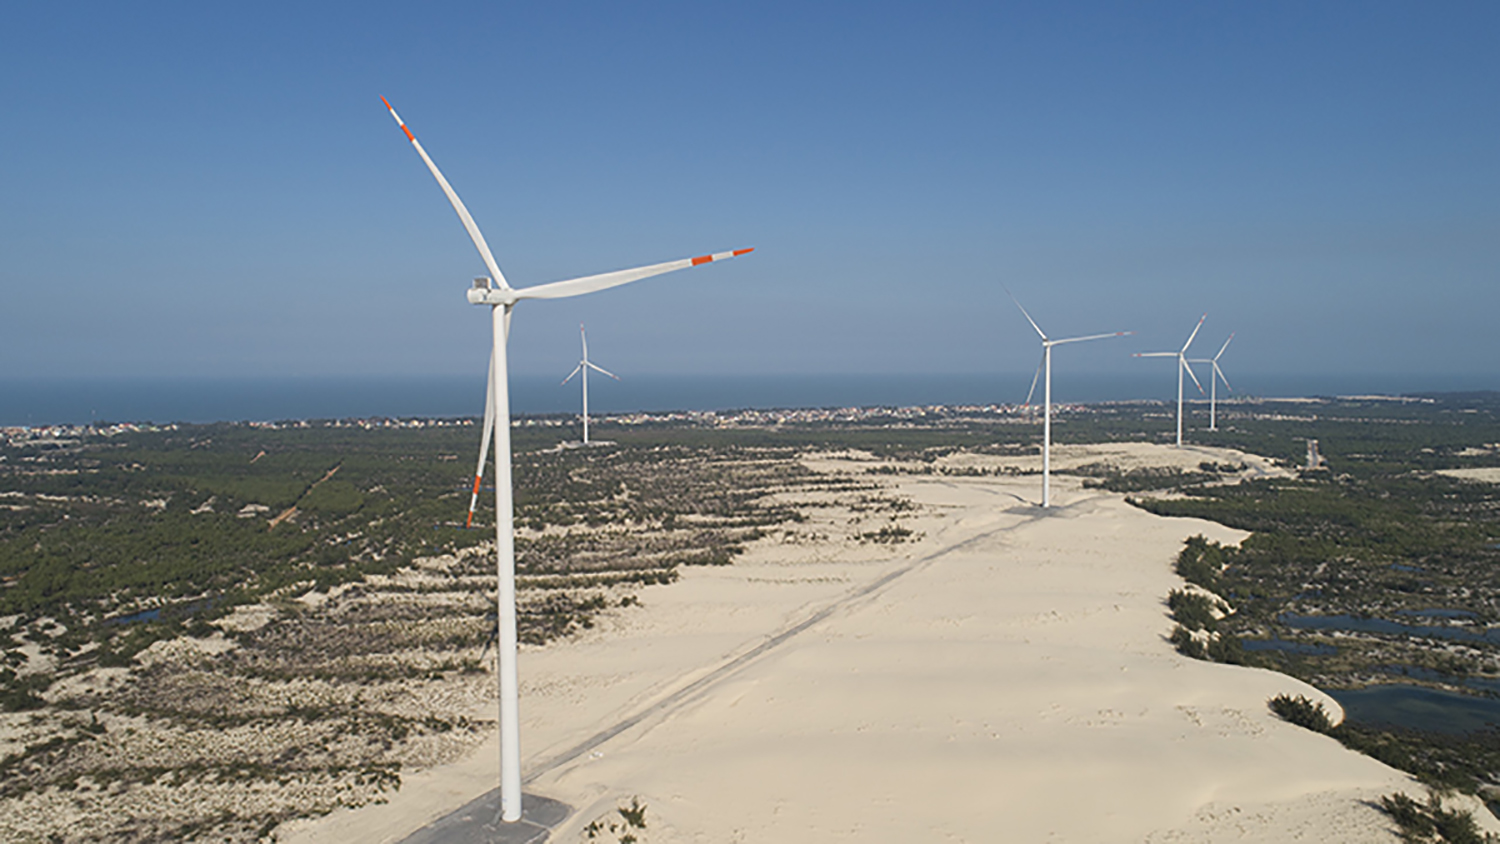 Vùng cát phía đông huyện Lệ Thủy có nhiều tiềm năng để phát triển điện gió. Ảnh: Phú Sơn